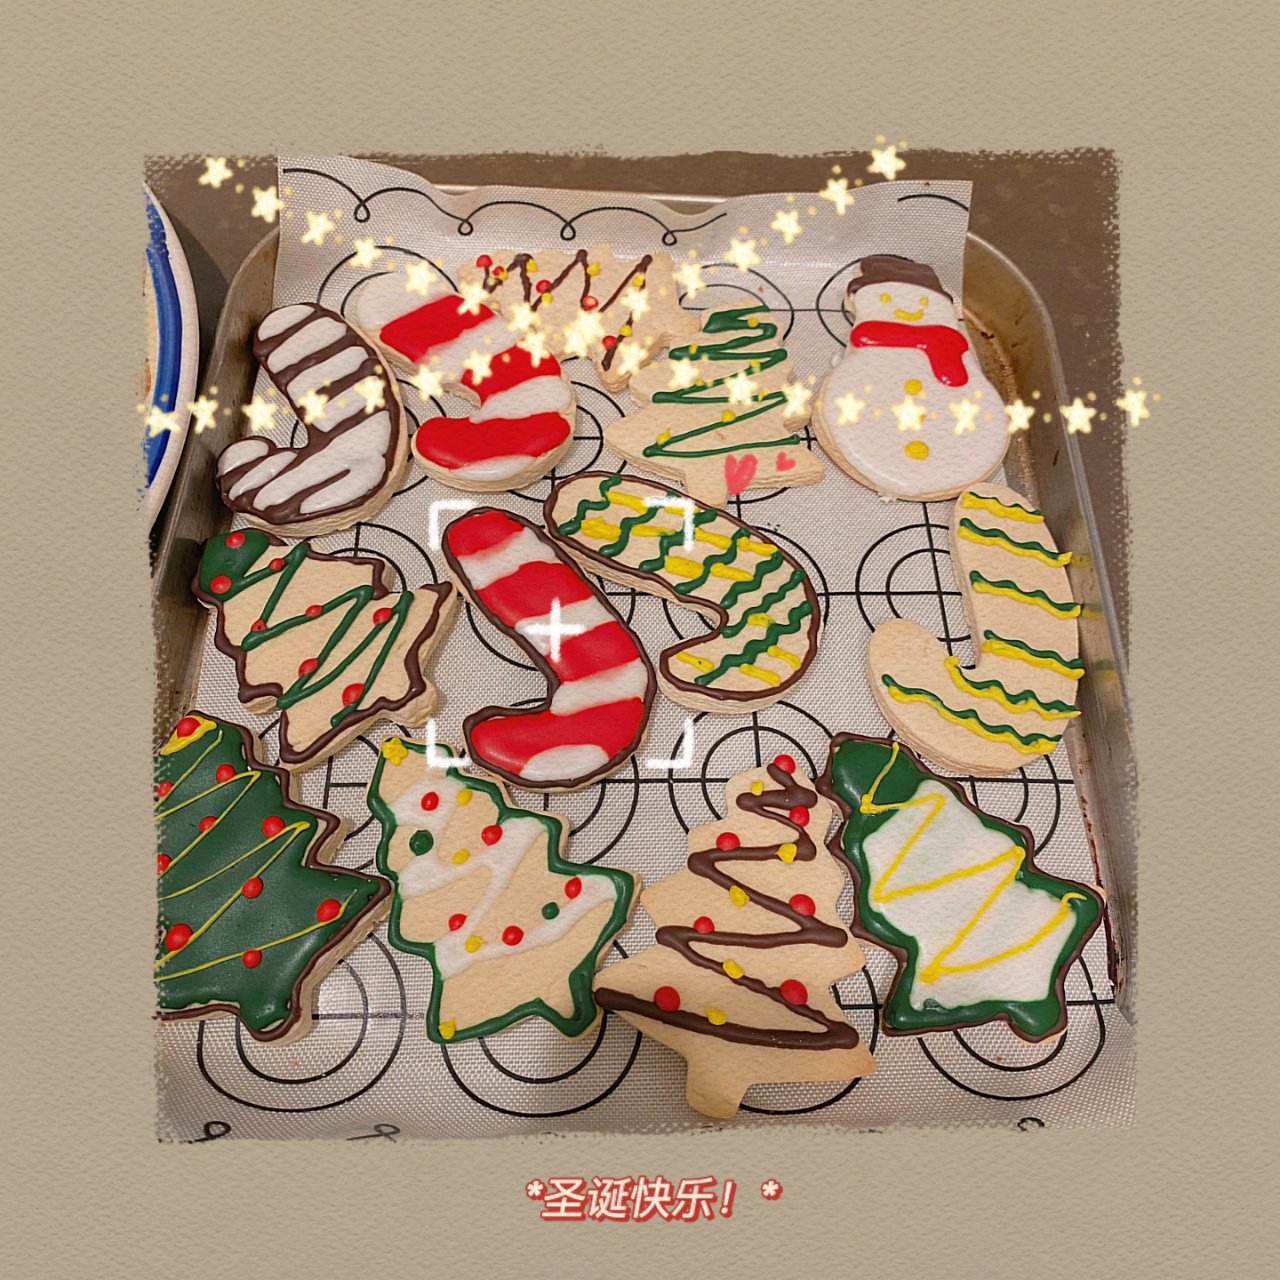 圣诞饼干们～祝大家圣诞快乐🎄...